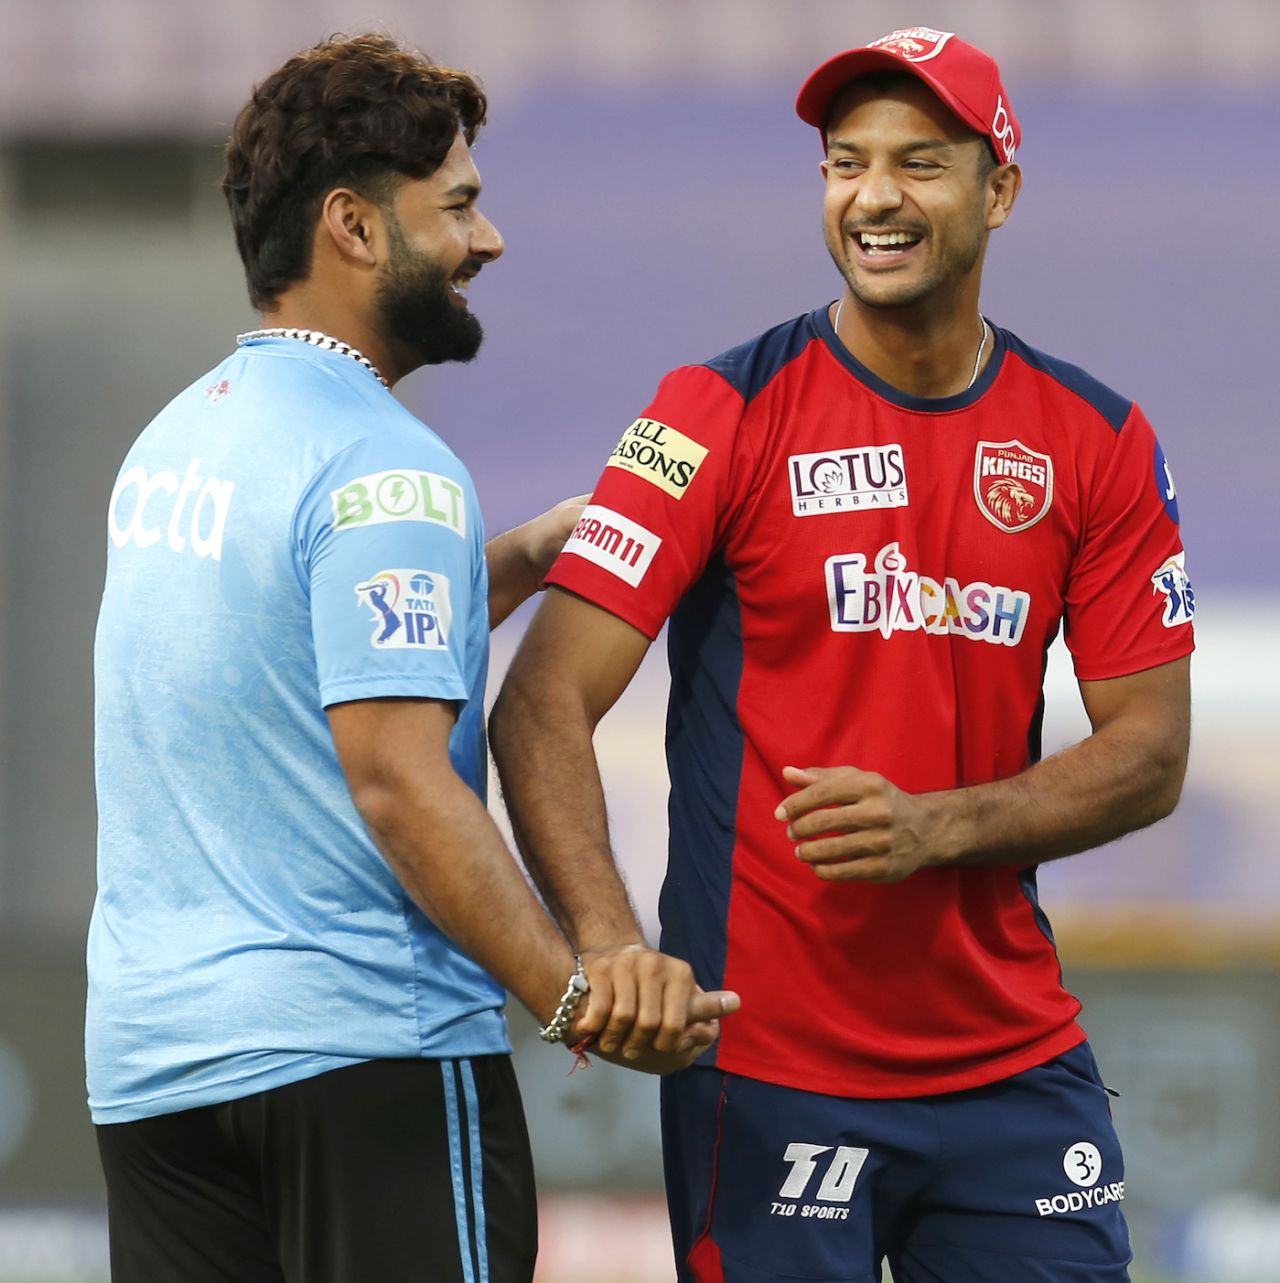 Rishabh Pant and Mayank Agarwal share a laugh as the teams warm up, Delhi Capitals vs Punjab Kings, IPL 2022, DY Patil Stadium, Mumbai, May 16, 2022